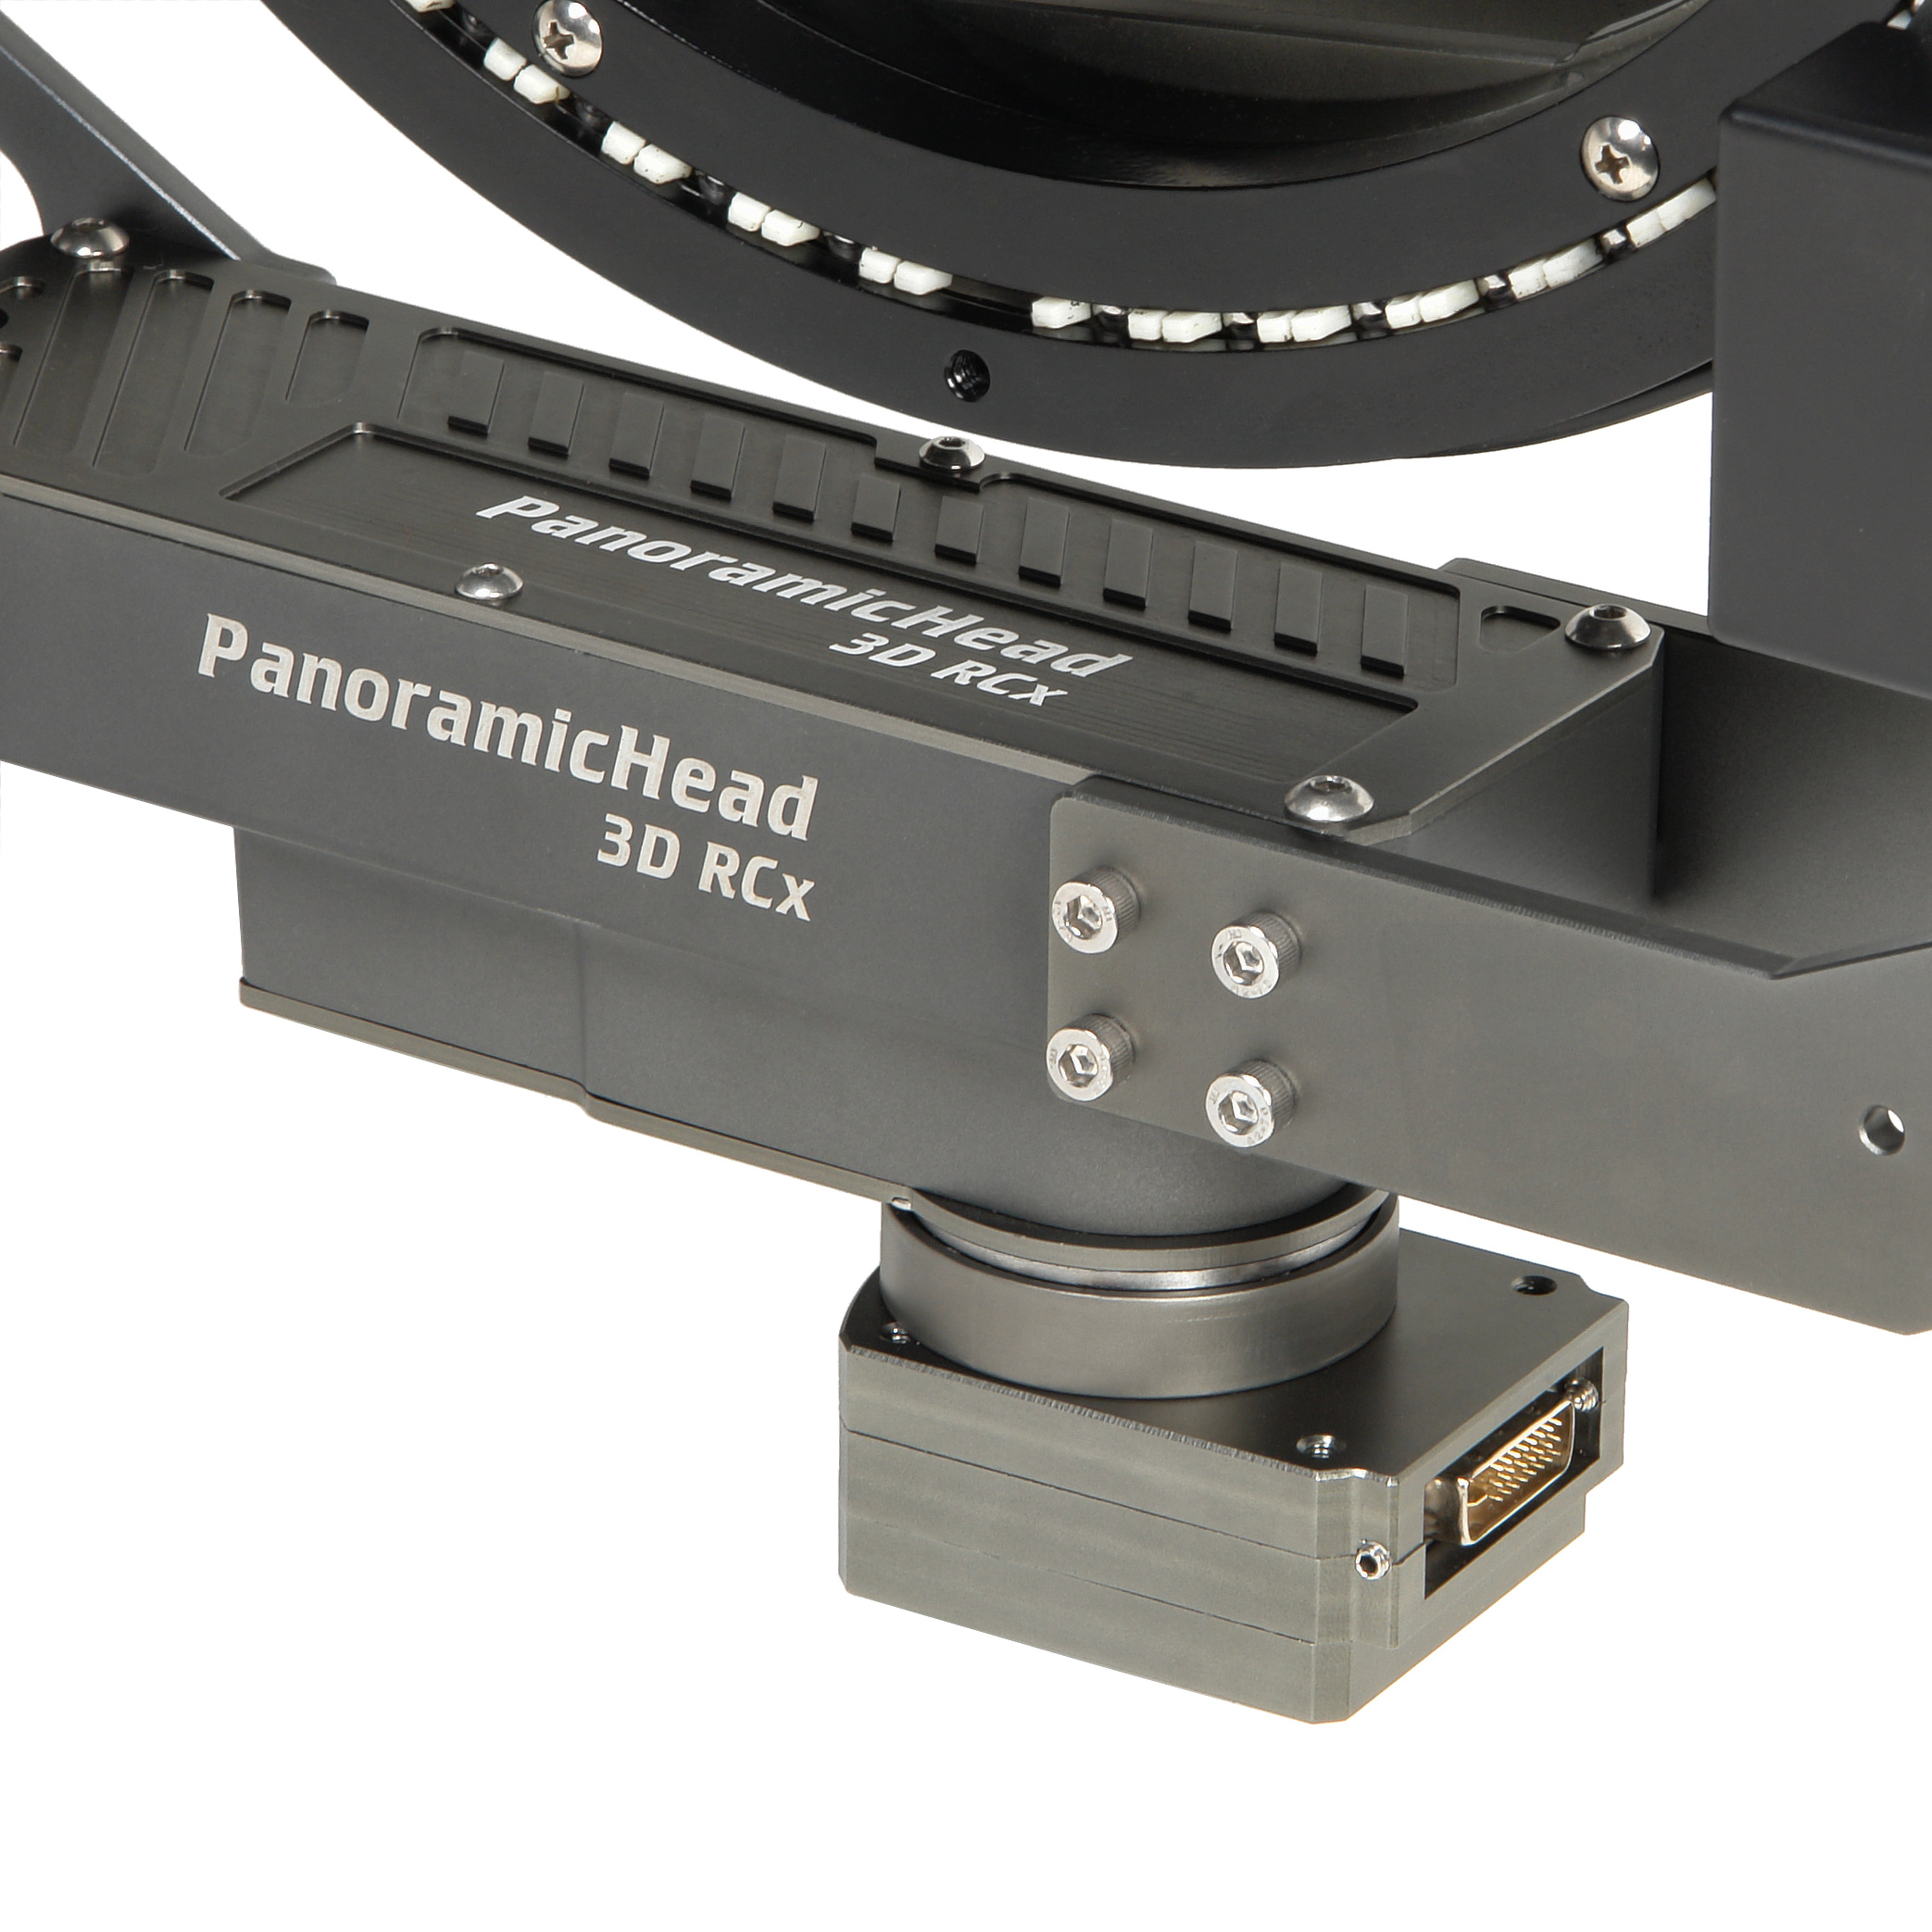    GreenBean PanoramicHead 3D RCx   Ultra-mart